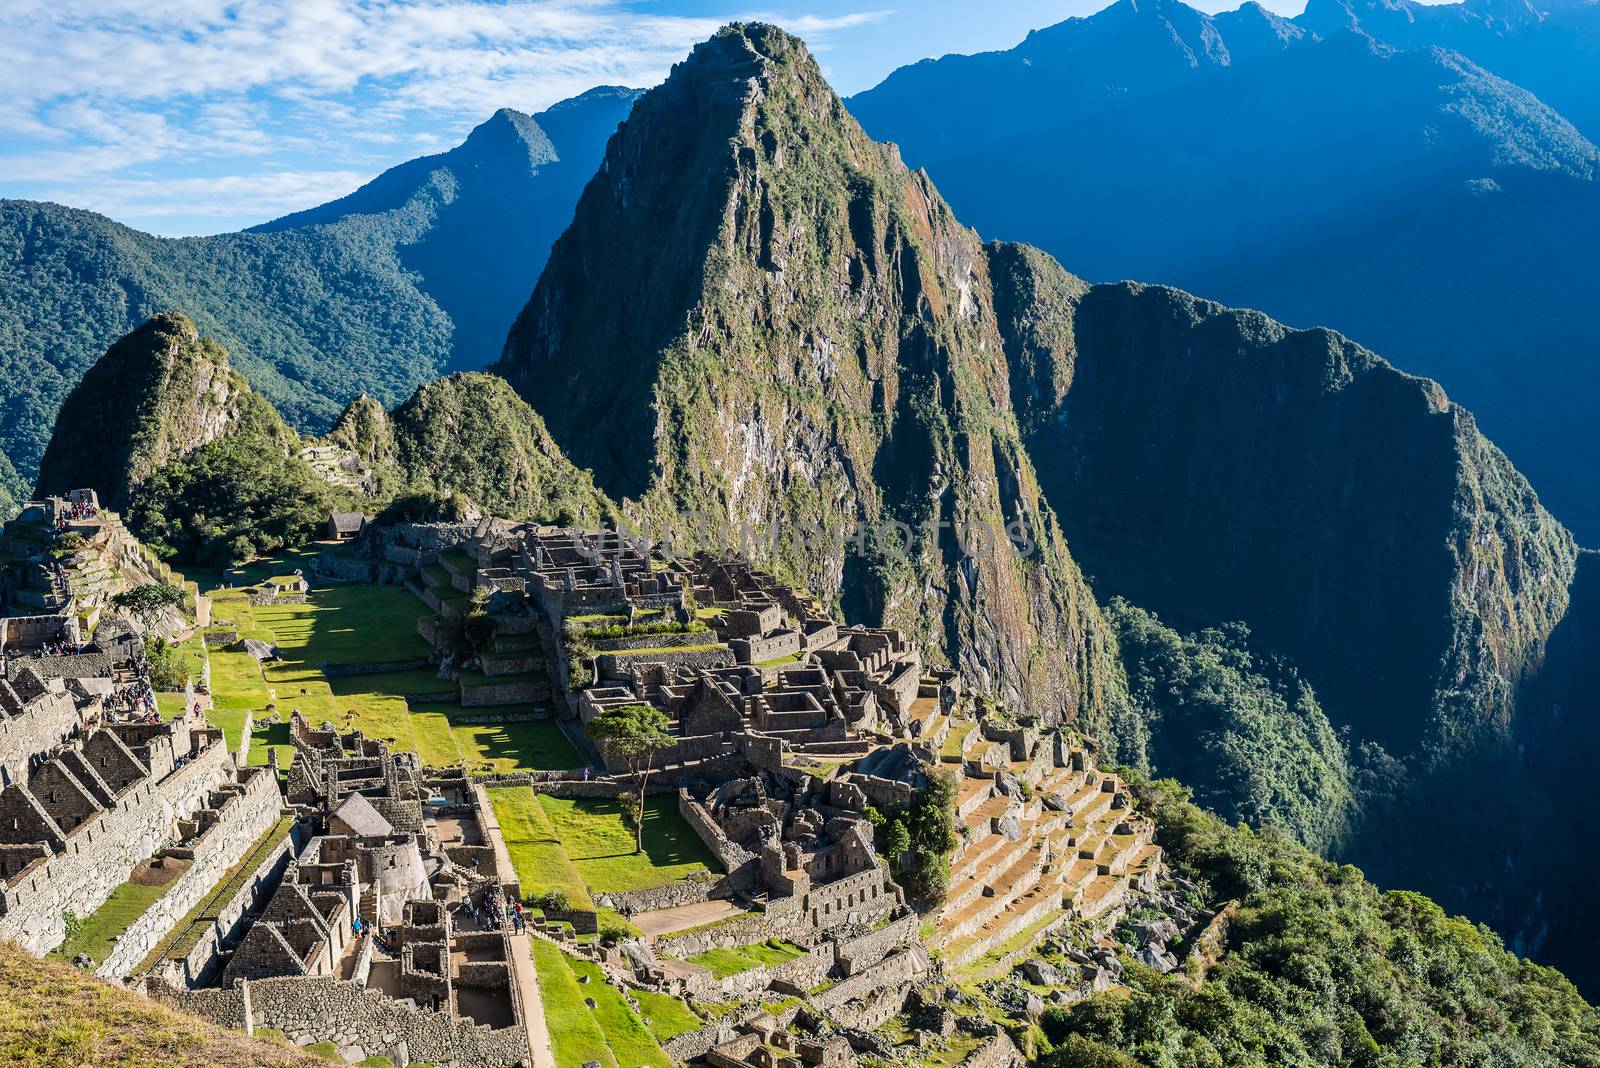 Machu Picchu, Incas ruins in the peruvian Andes at Cuzco Peru